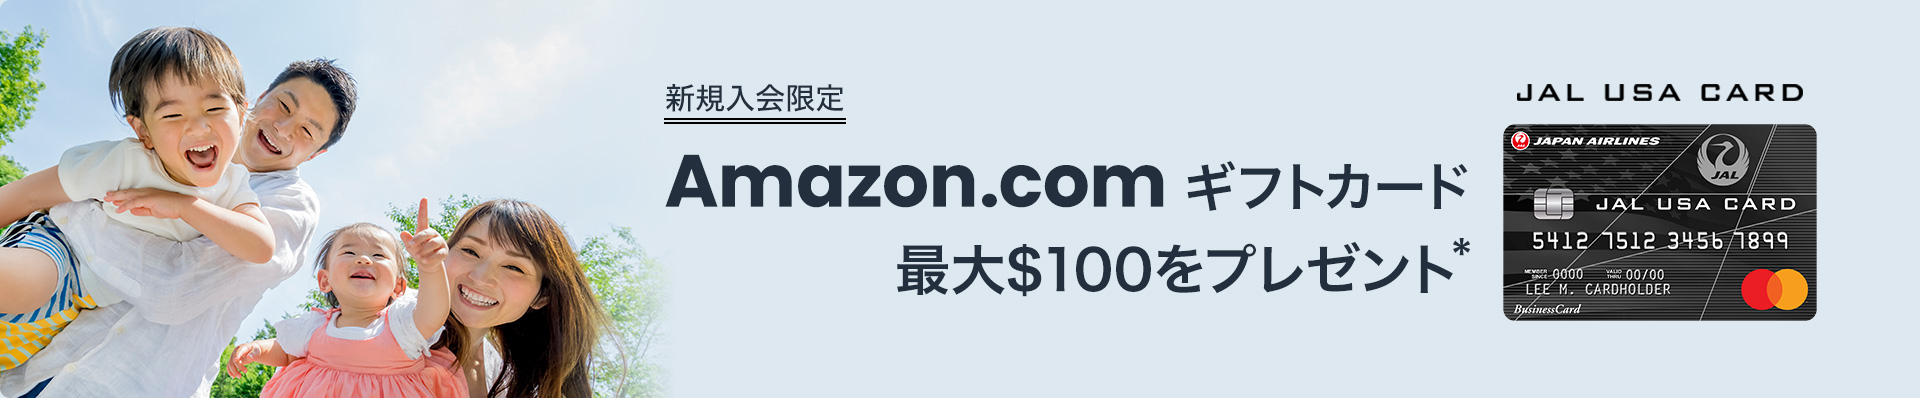 Amazon.comギフトカード 最大$100をプレゼント*